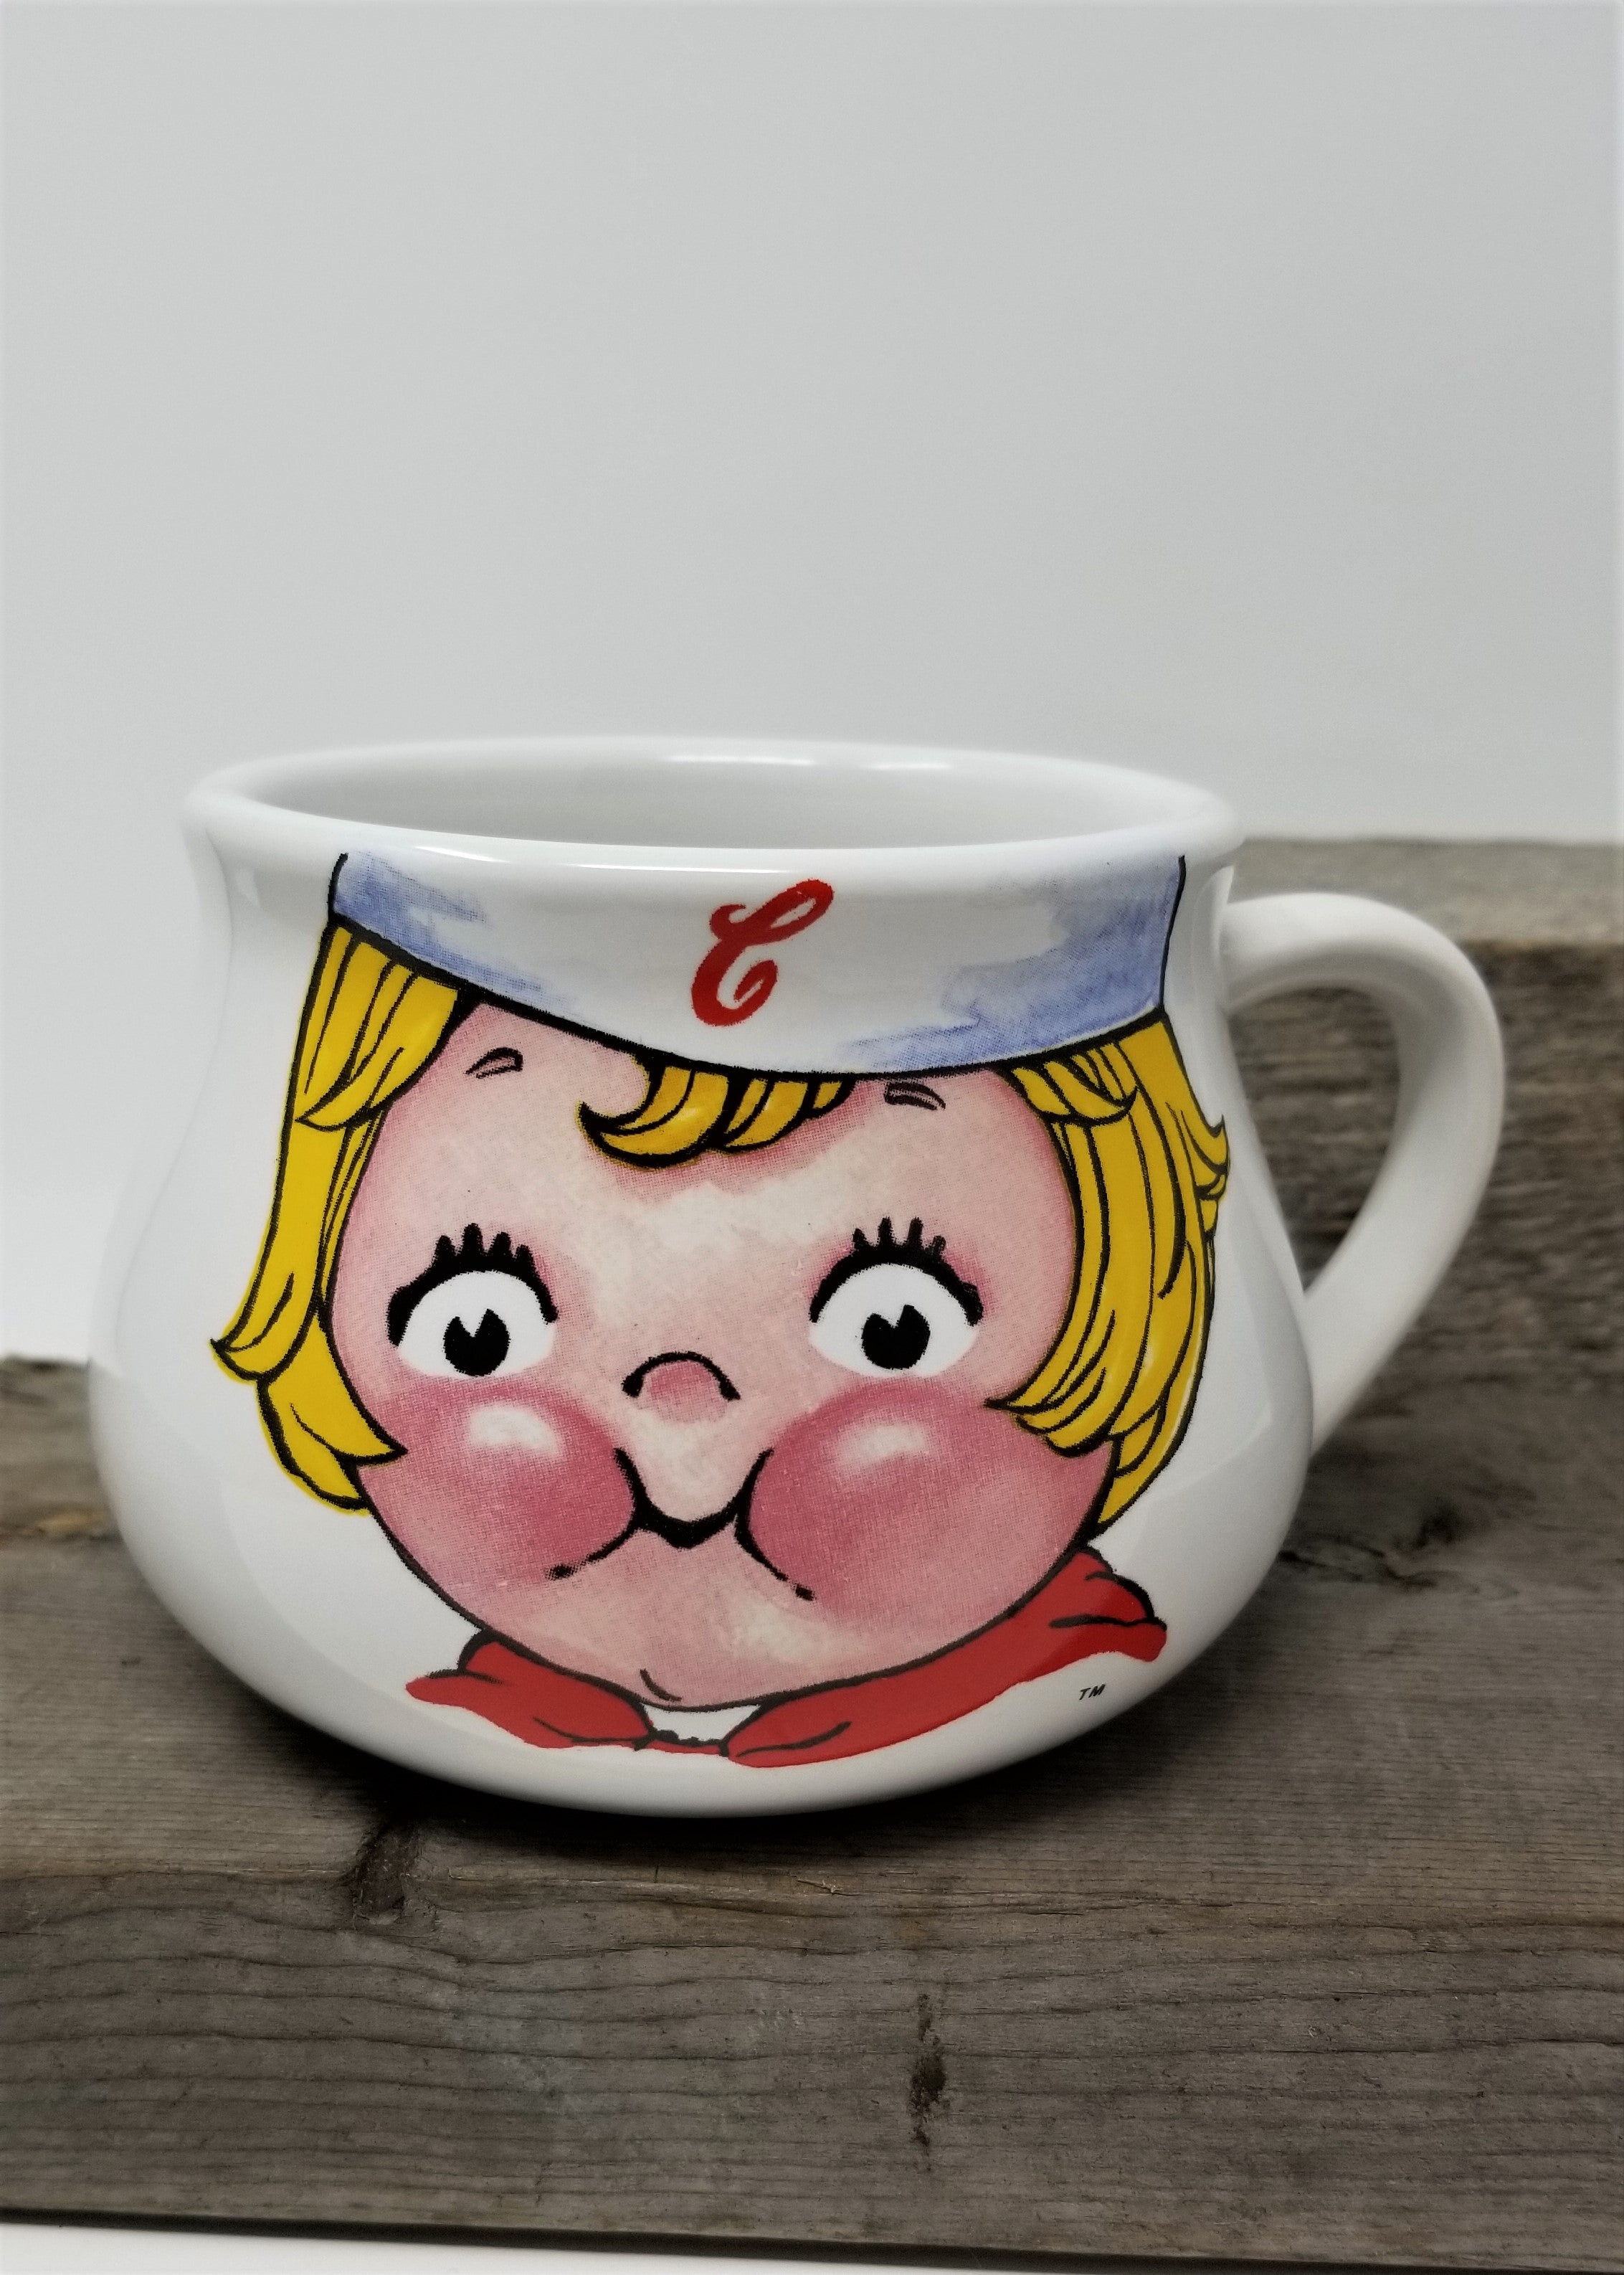 Time for Campbell's Soup Mug 1998 Vintage